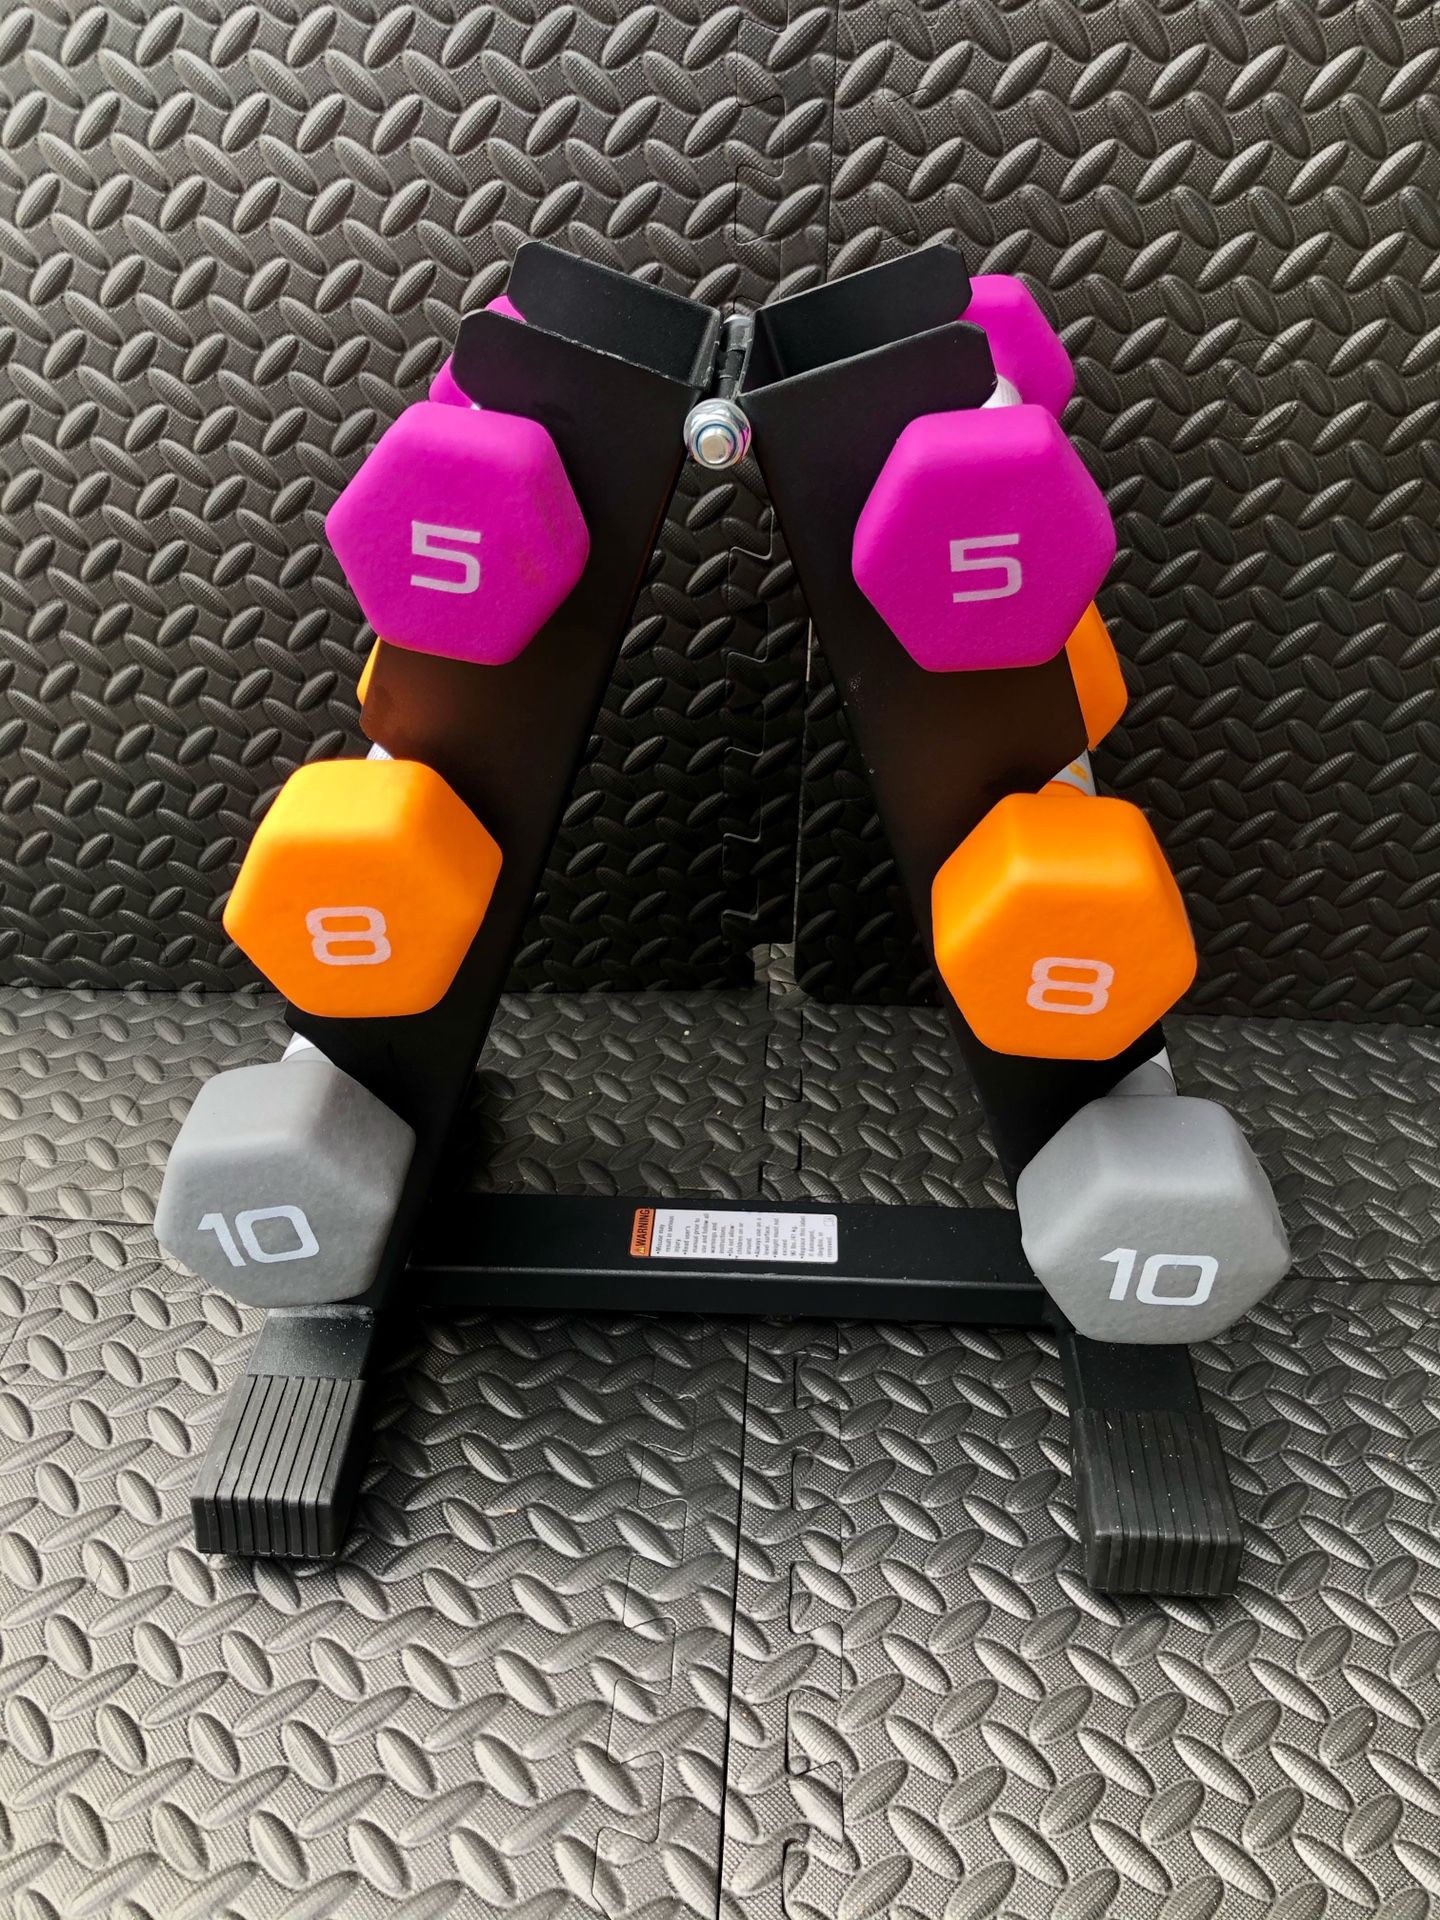 Dumbbells- weight lifting - 3 sets neoprene dumbbells